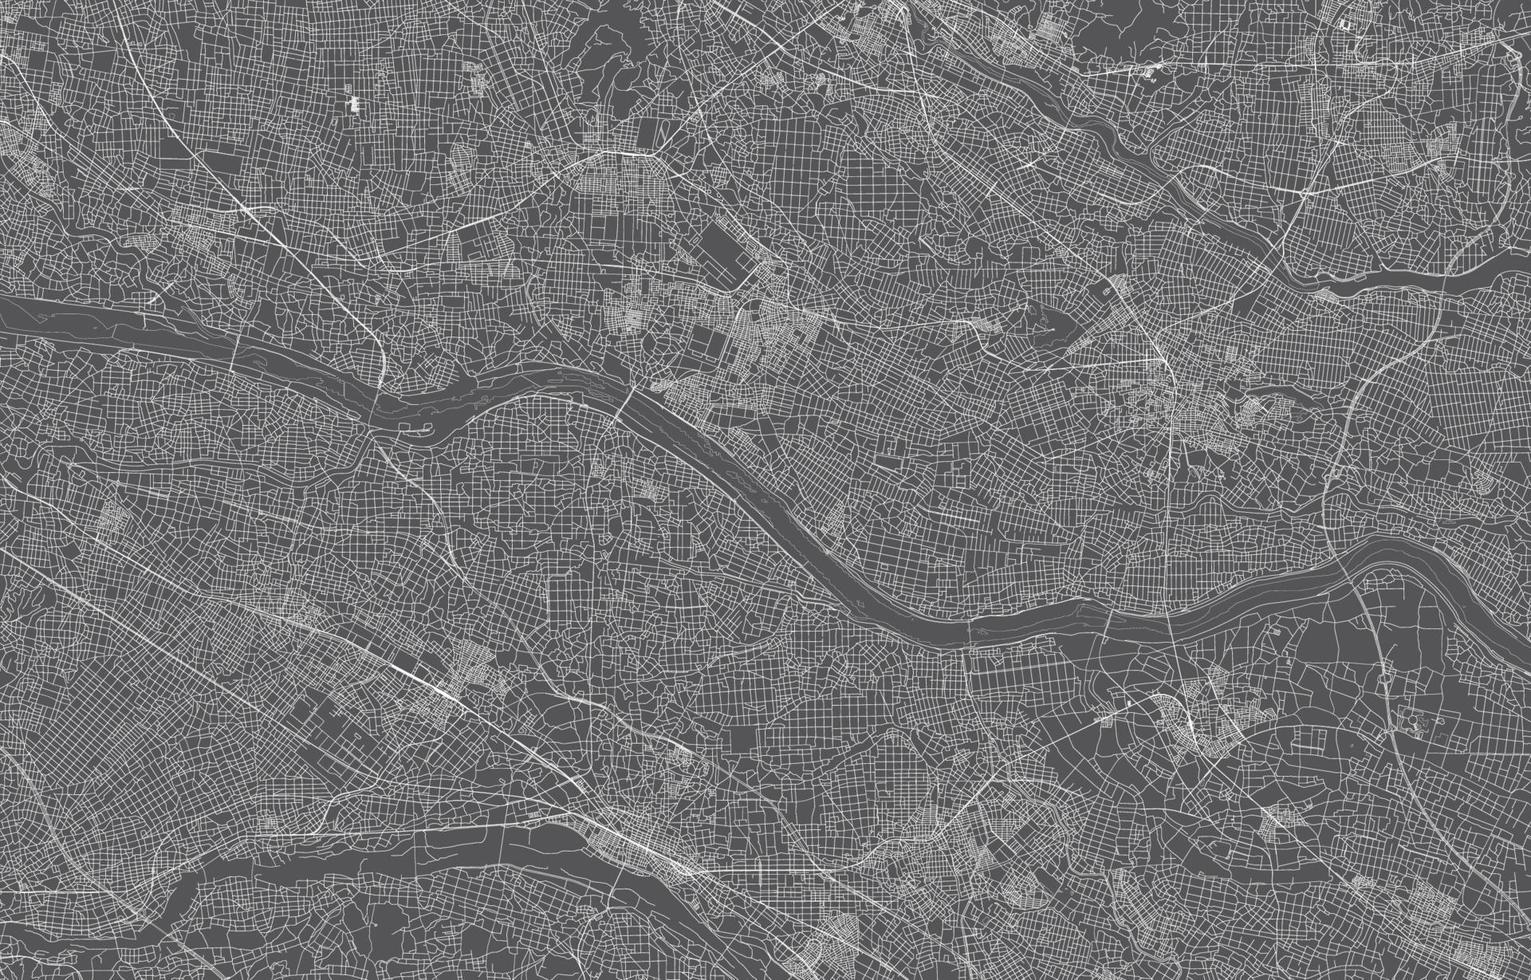 Japan stad kaart. vector illustratie met zwart achtergrond, wit schets, tafereel met Japan stad, dorp, weg, straat, kaart stedelijk, plaats, mijlpaal, vervoer. ontwerp voor afdrukken, poster, behang.